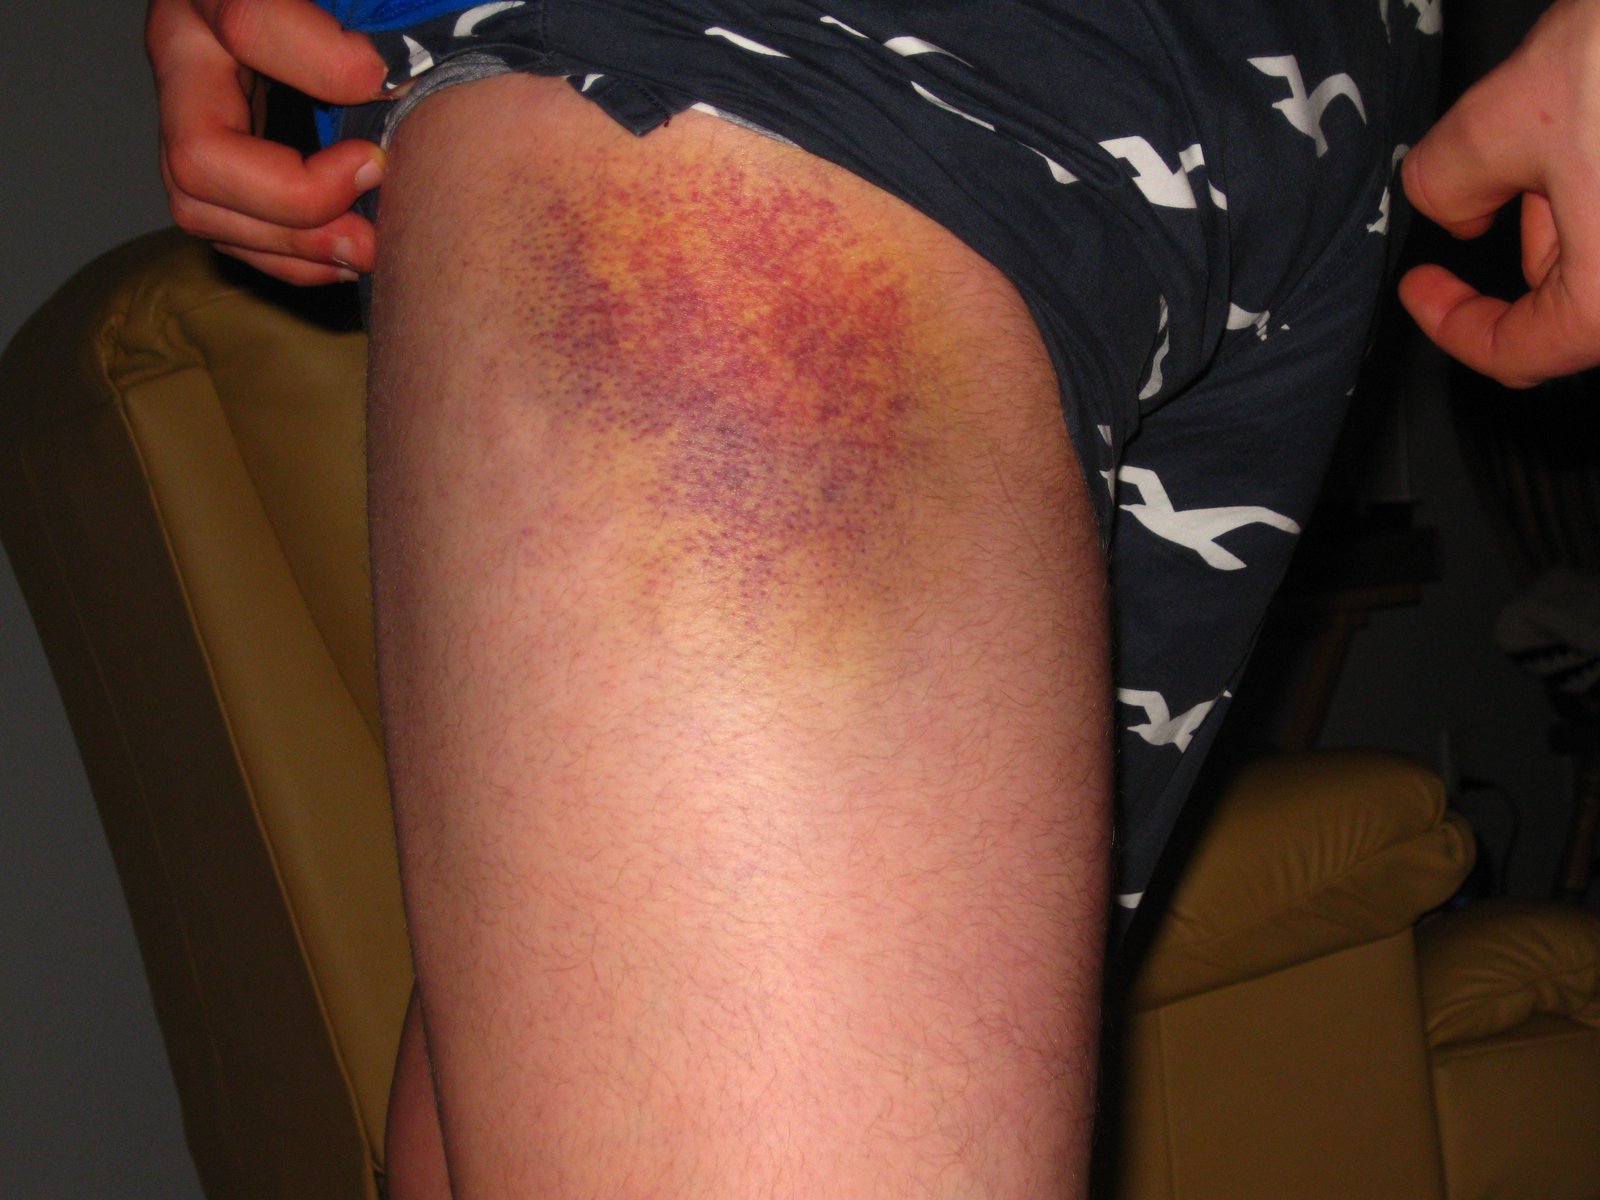 Metal + Leg = Gnarly Bruise